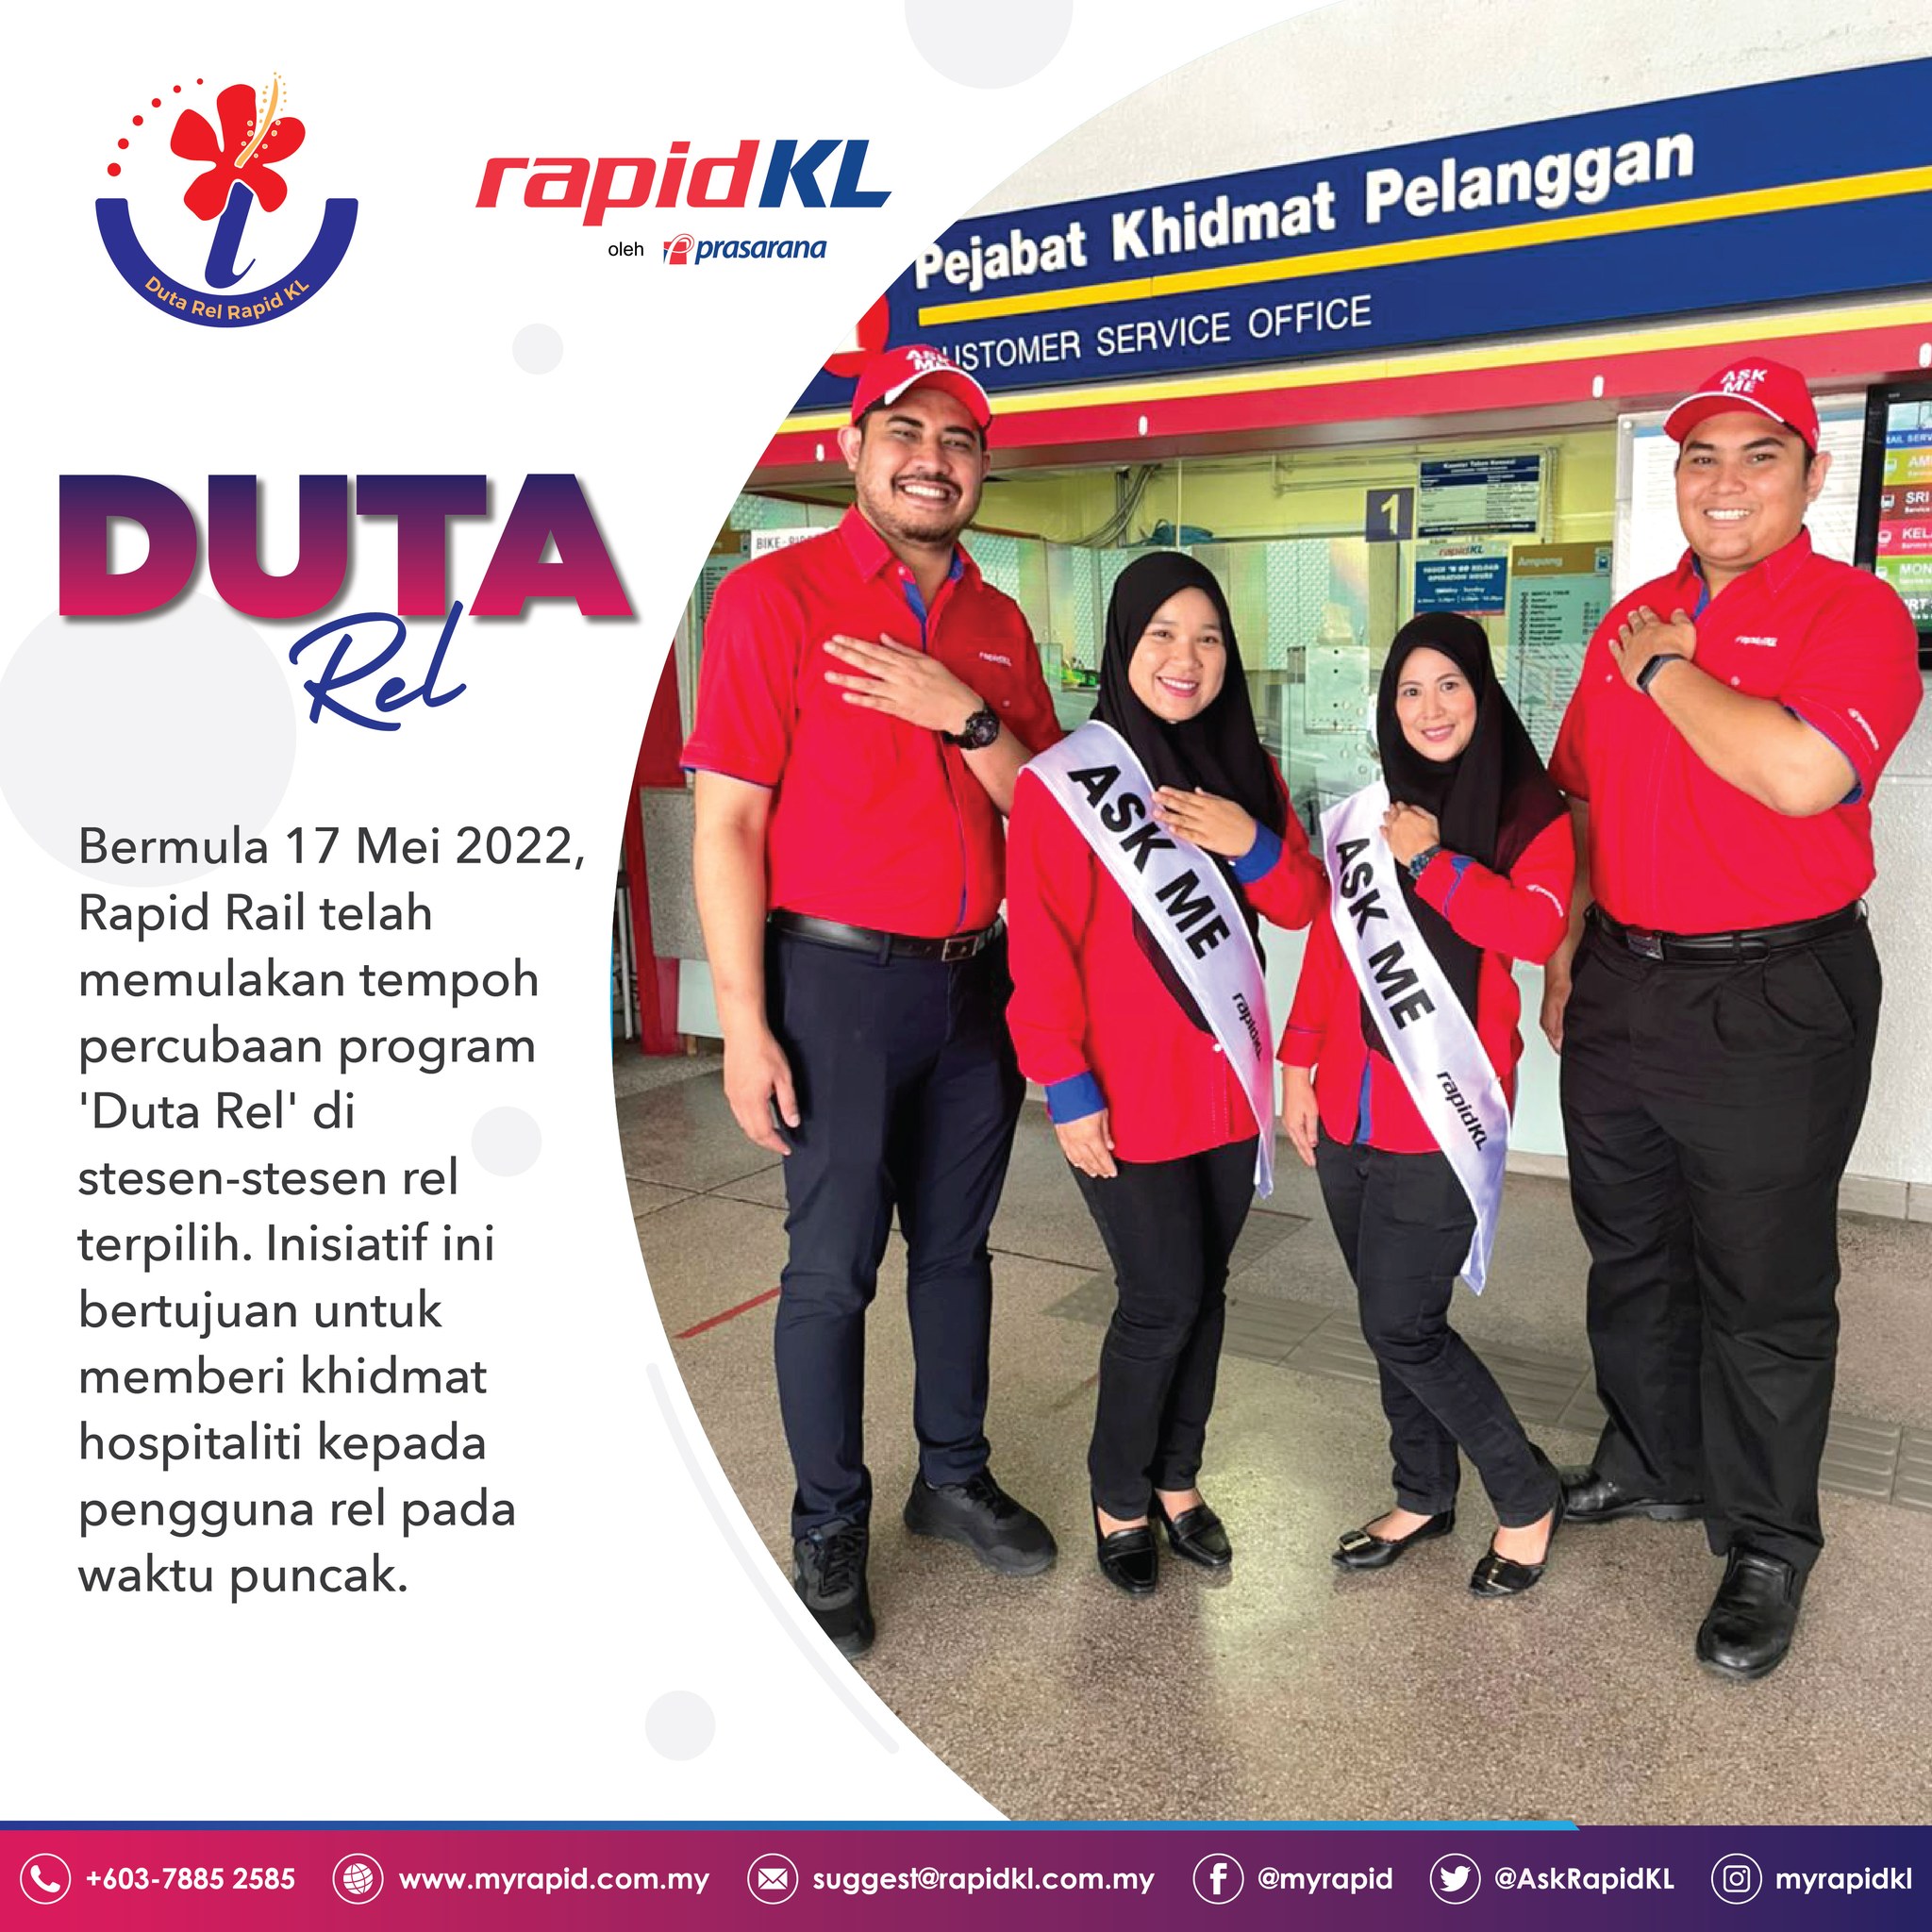 Rapid KL Duta Rel ambassadors 1